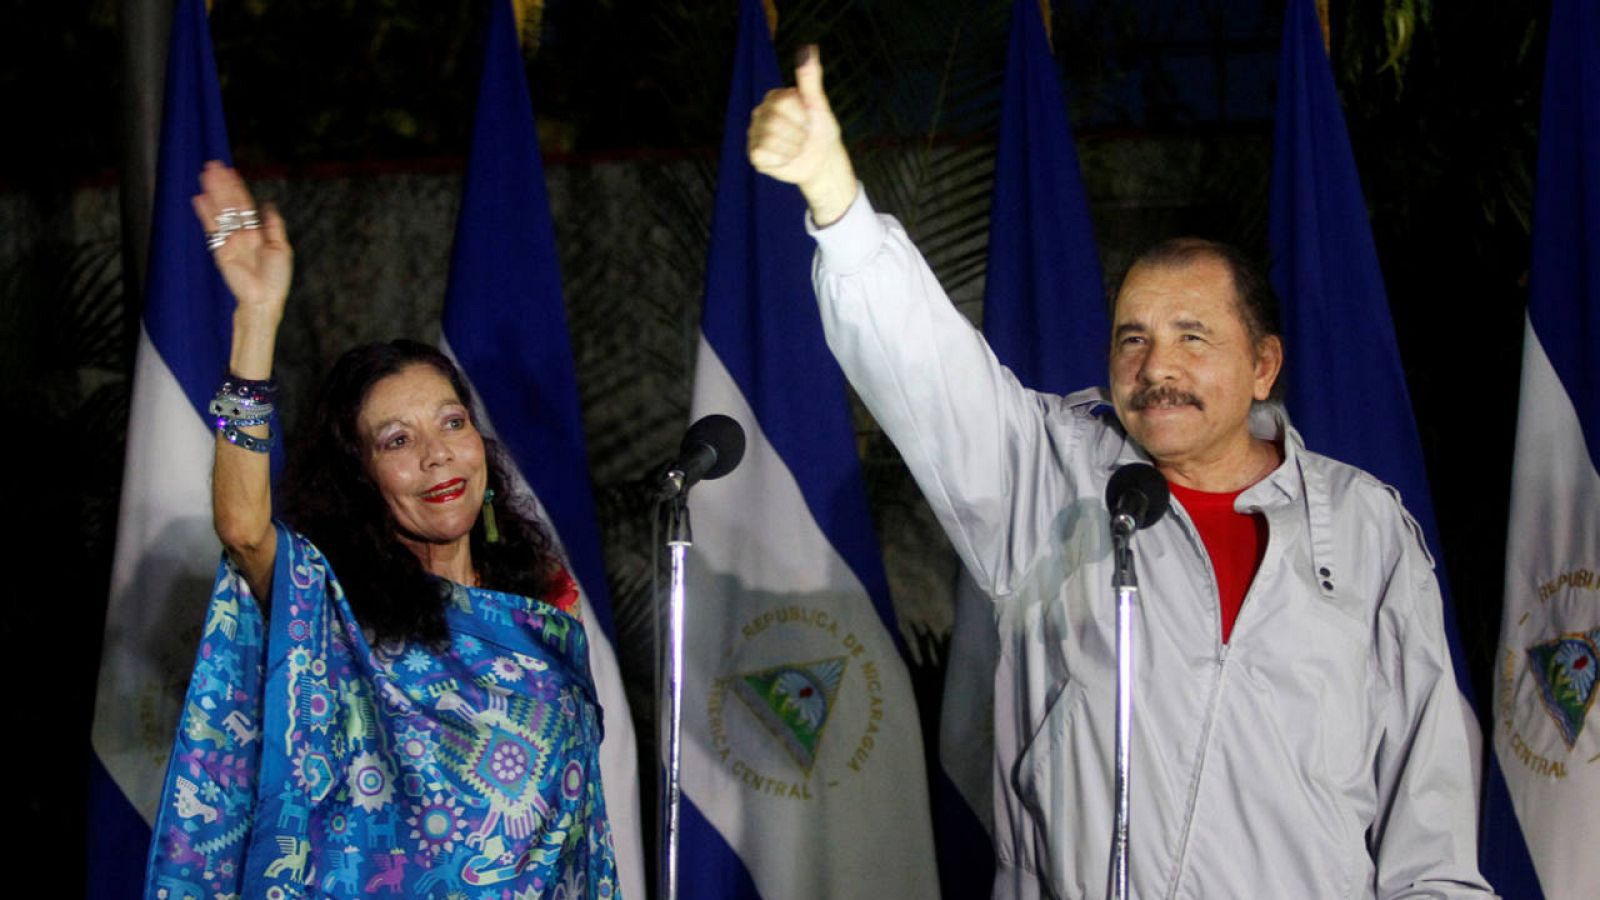  El presidente de Nicaragua, Daniel Ortega, junto a su mujer Rosario Murillo, candidata a la vicepresidencia.